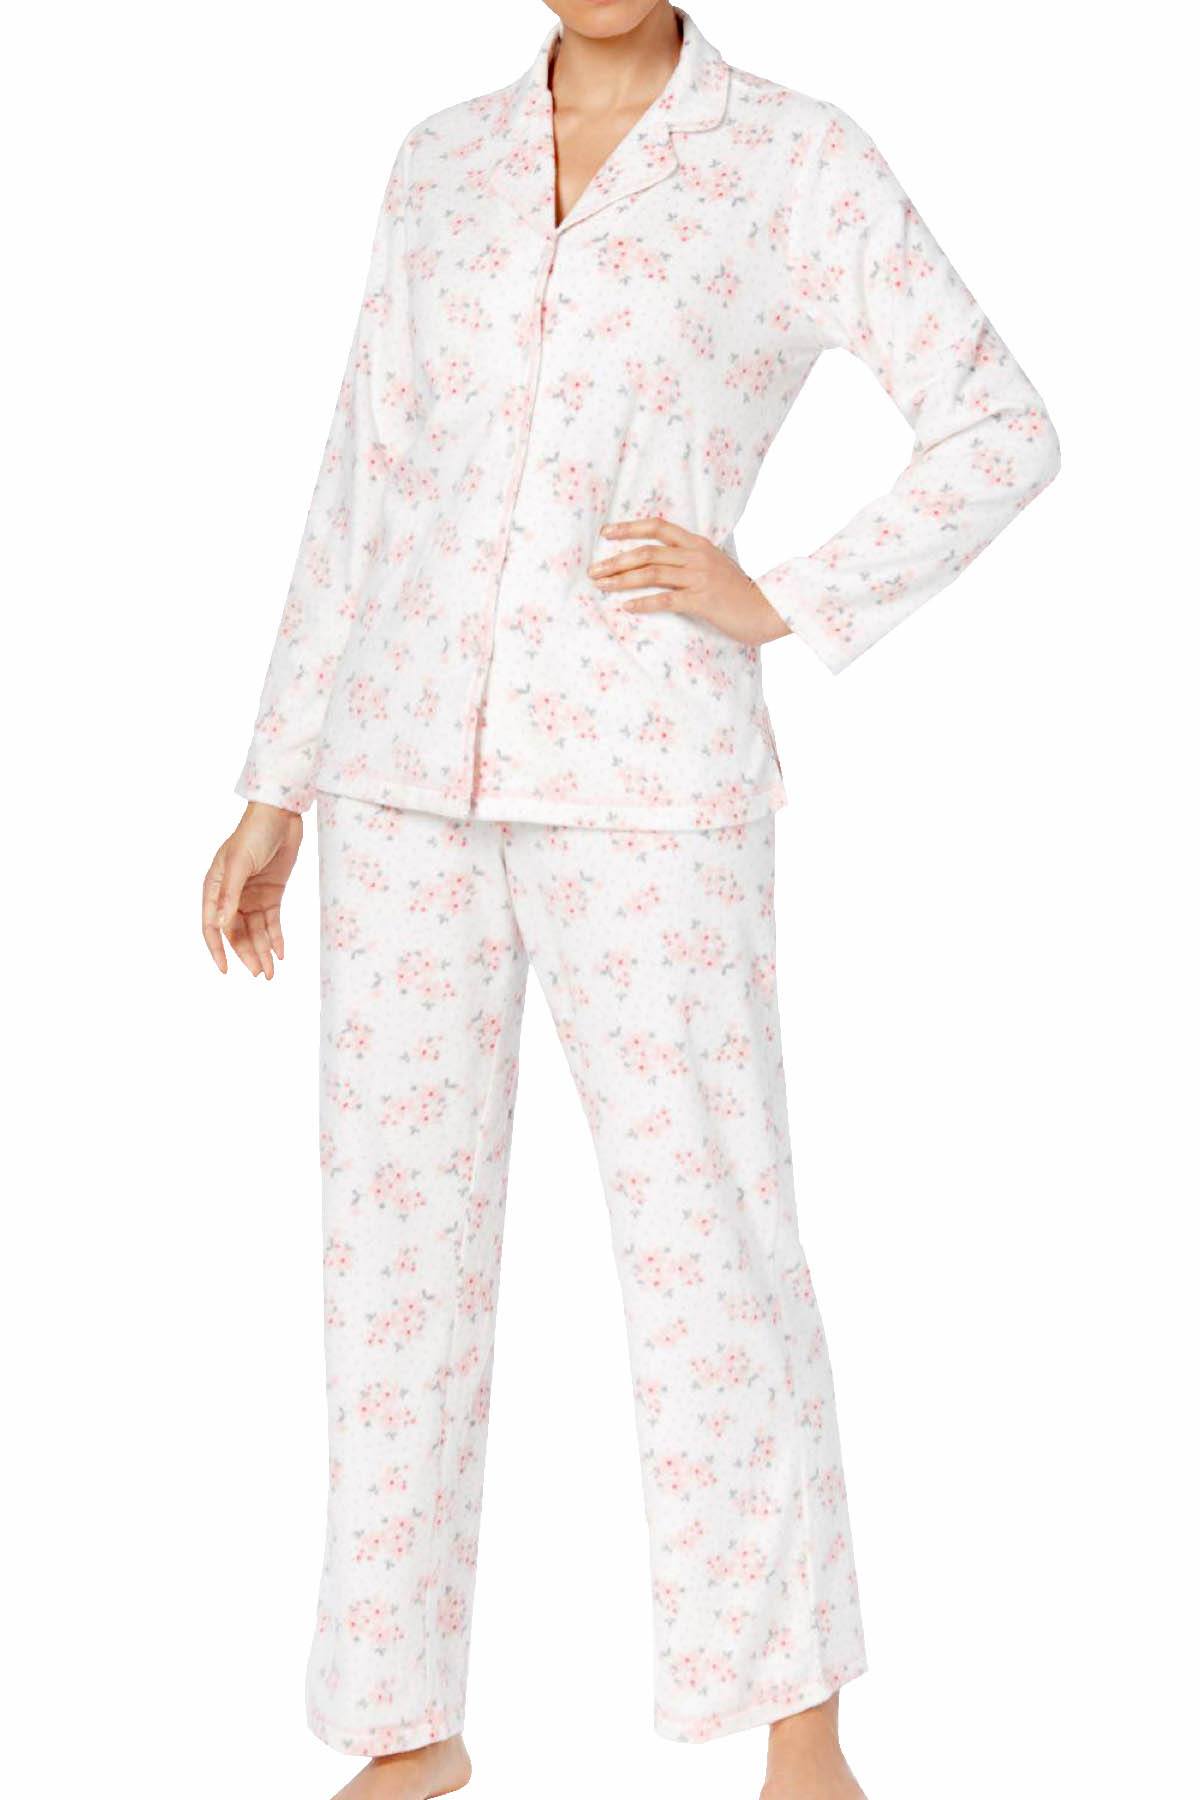 Charter Club Intimates Dot-Floral Printed Fleece Pajama Set